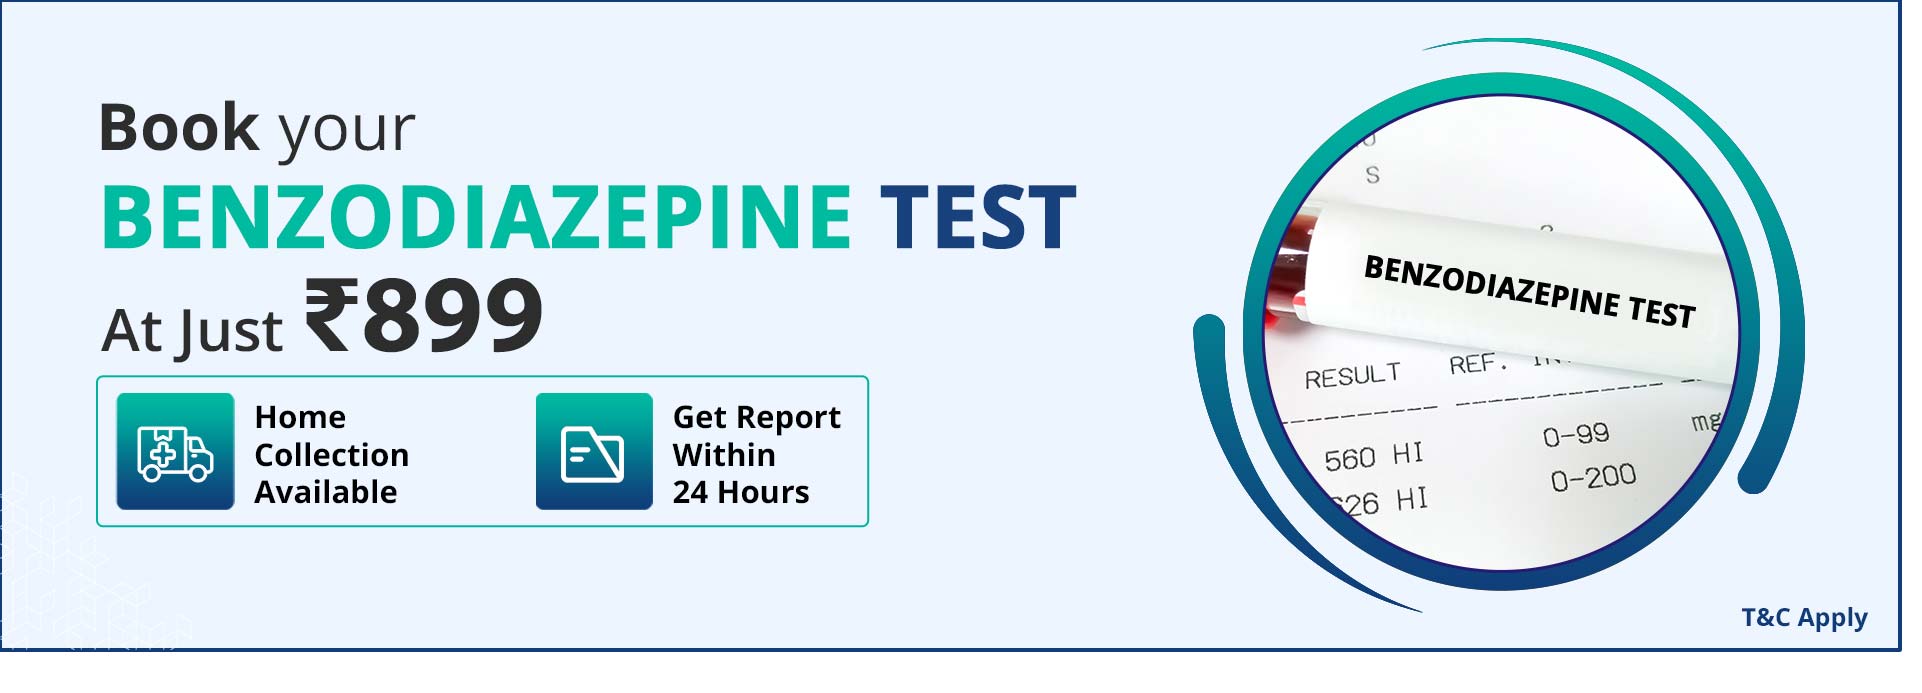 Benzodiazepine Test